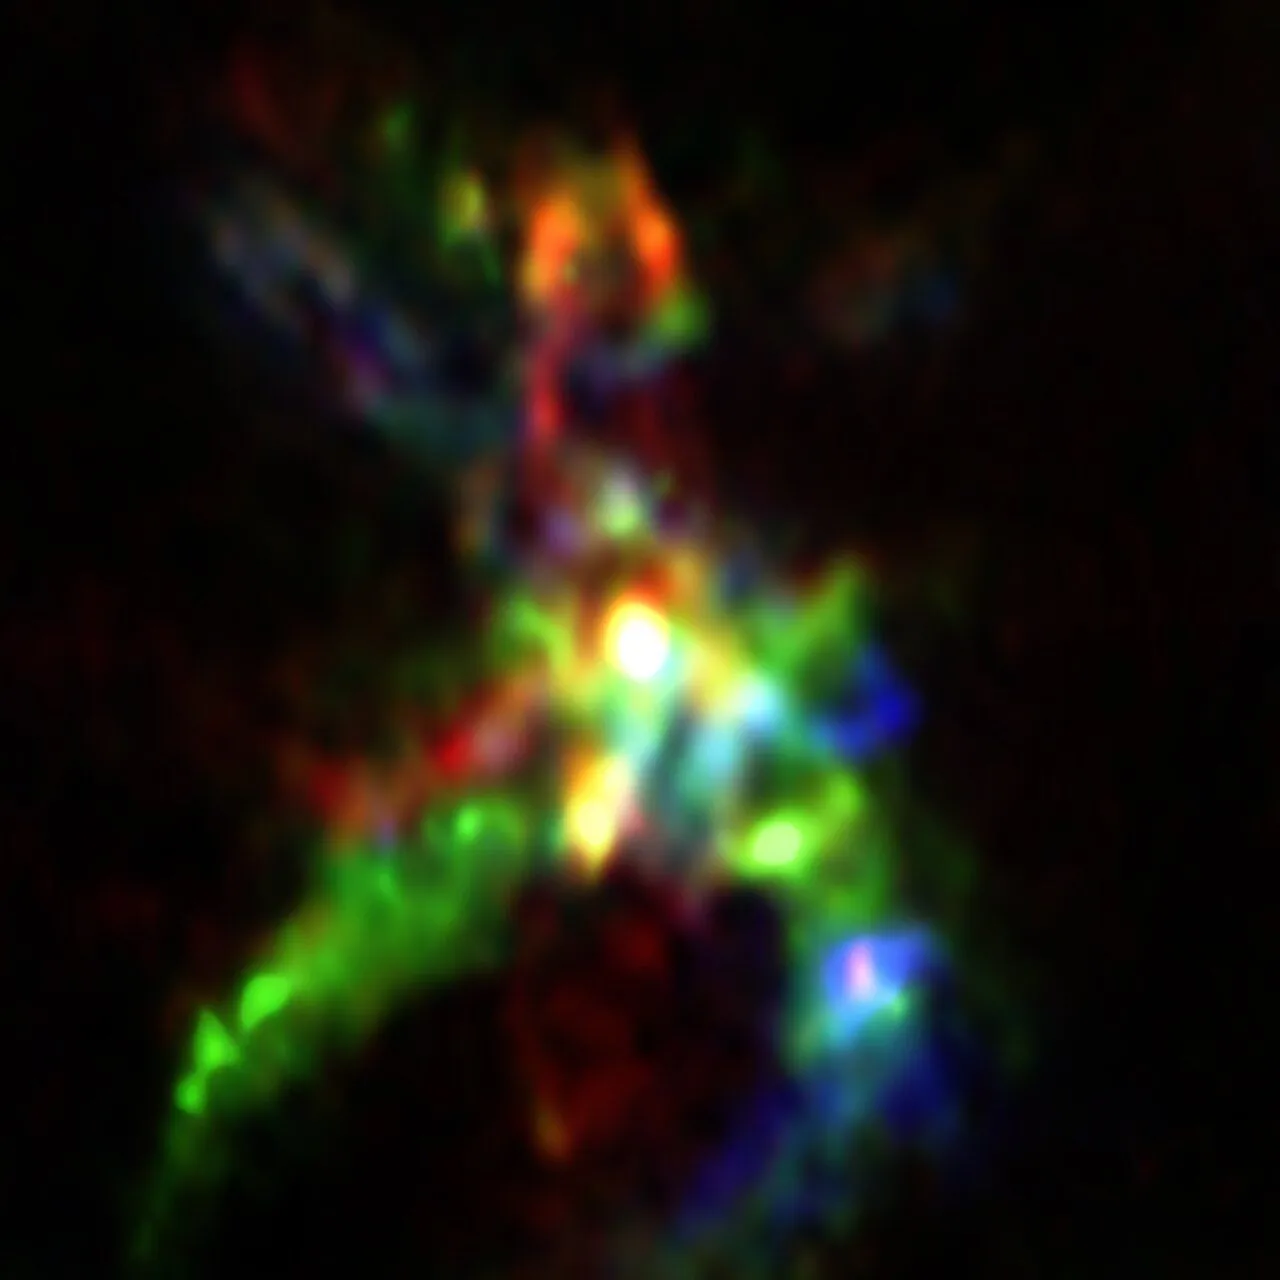 Obraz z sieci radioteleskopów ALMA prezentuje obszar gwiazdotwórczy AFGL 5142. W centrum widać niemowlęcą, jasną, masywną gwiazdę. Źródło: ALMA (ESO/NAOJ/NRAO), Rivilla et al.